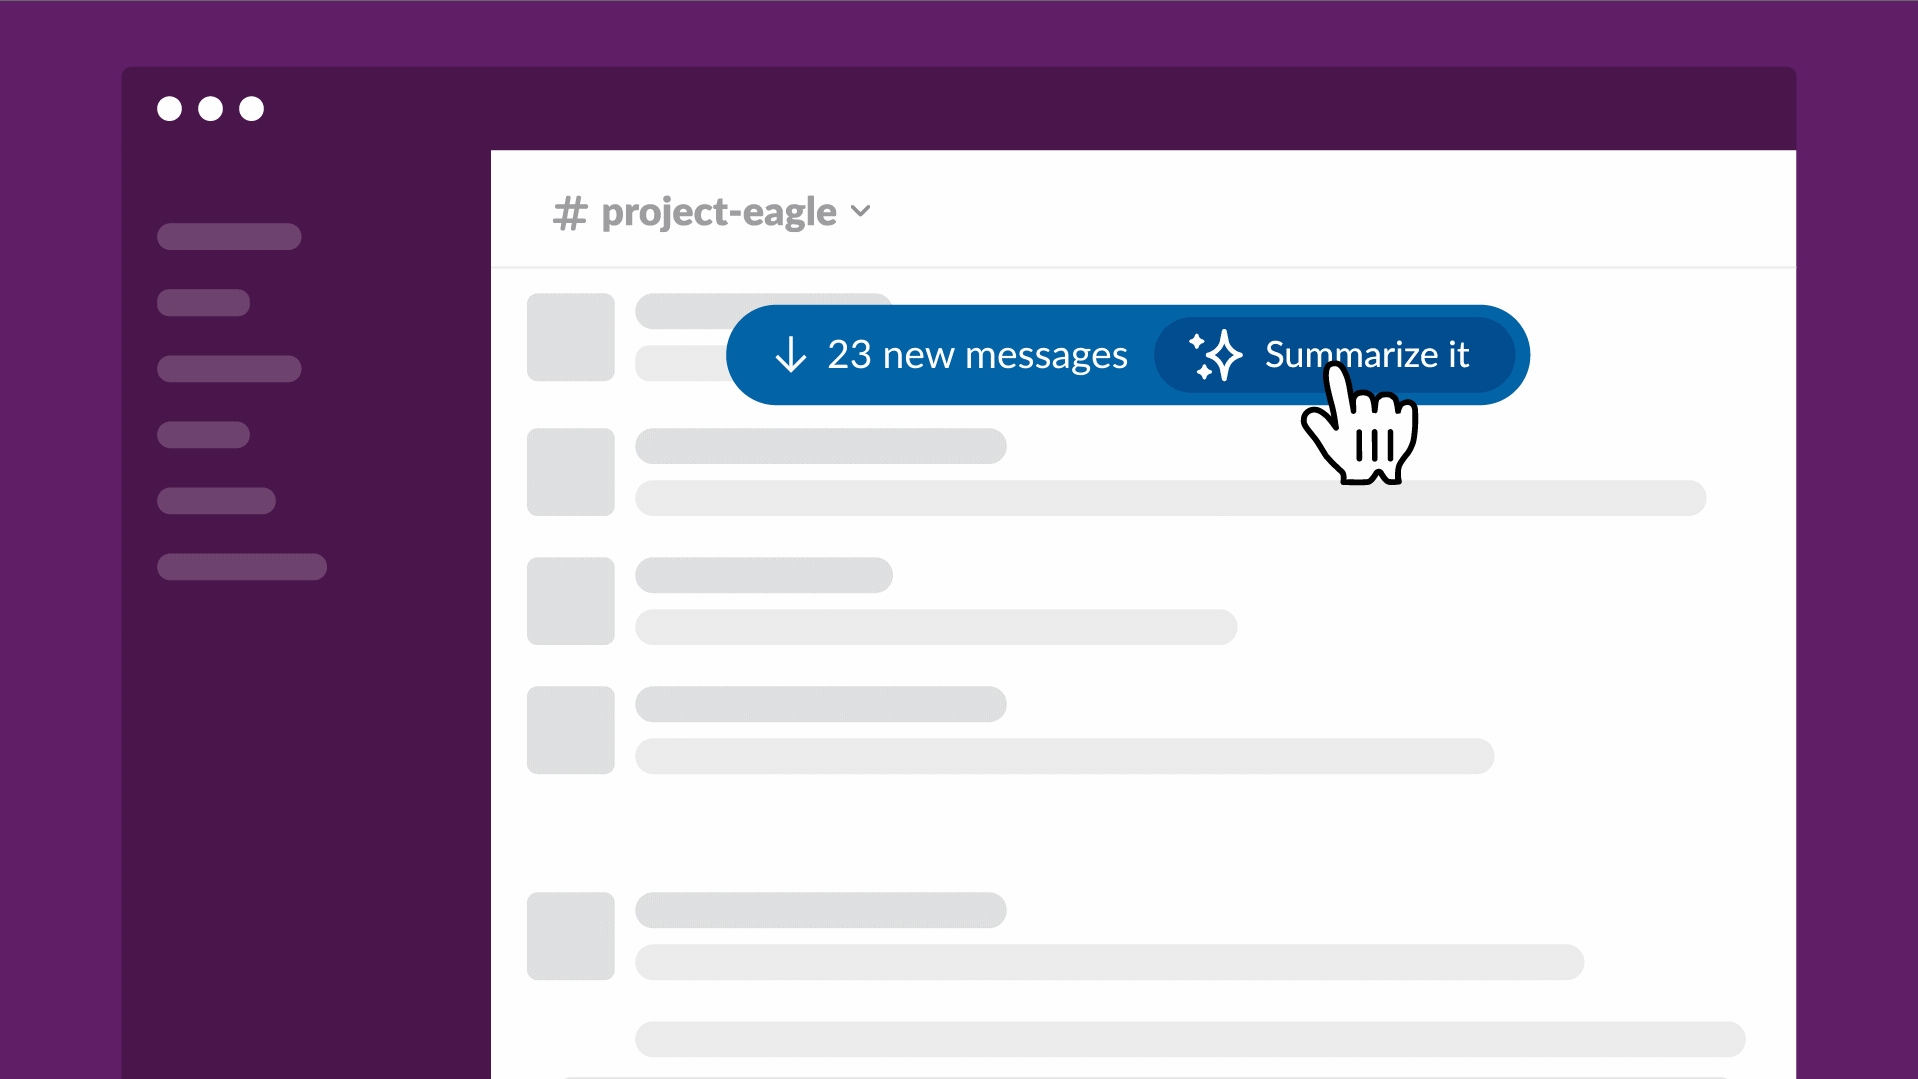 Ein Mockup-Bild des Slack-GPT-Chatbots von Slack, das einen Benutzer zeigt, der damit beginnt, einen langen Nachrichten-Thread zusammenzufassen.